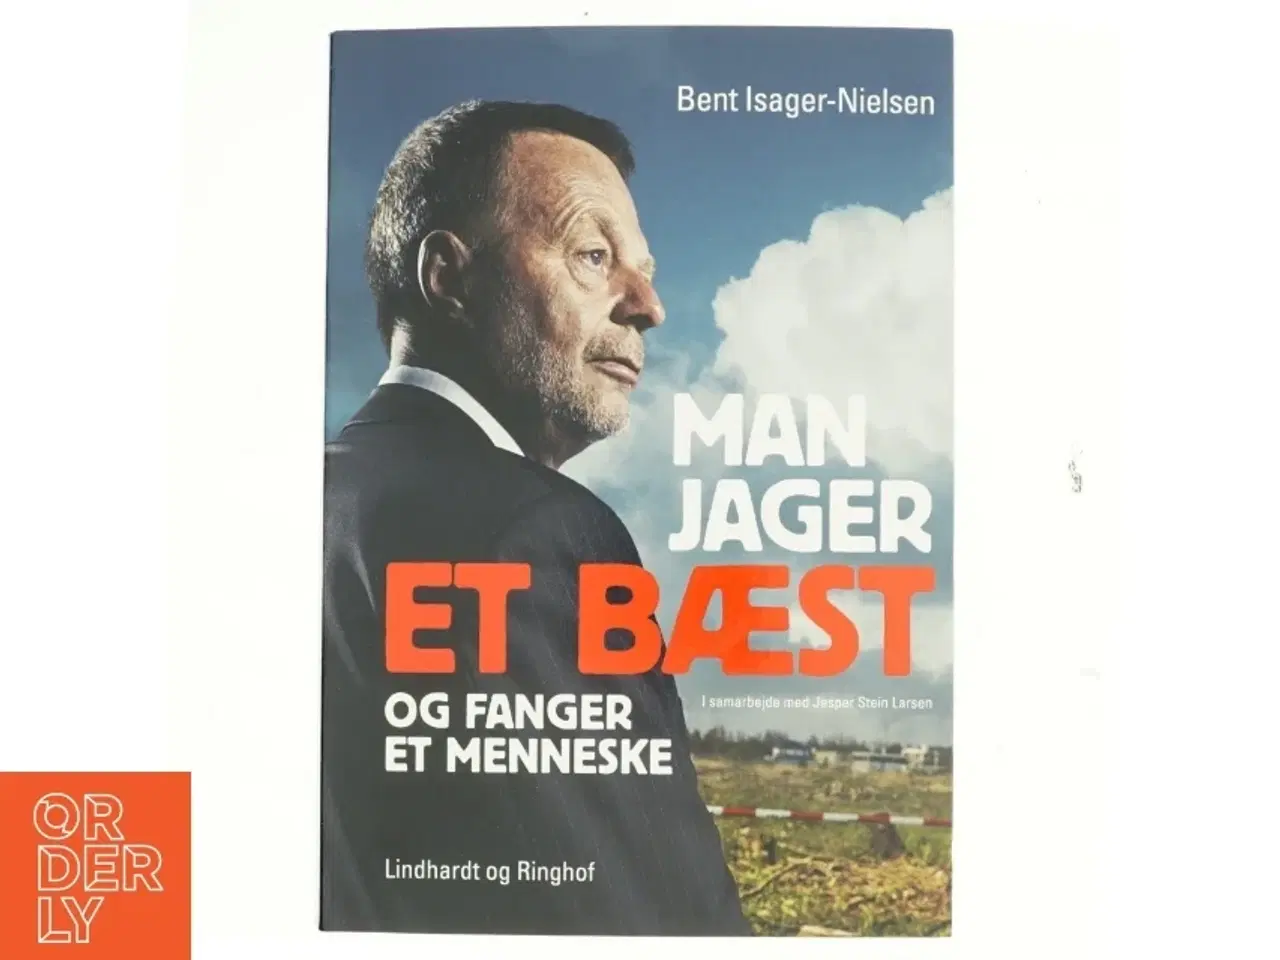 Billede 1 - Man jager et bæst og fanger et menneske af Bent Isager-Nielsen, Jesper Stein Larsen (Bog)